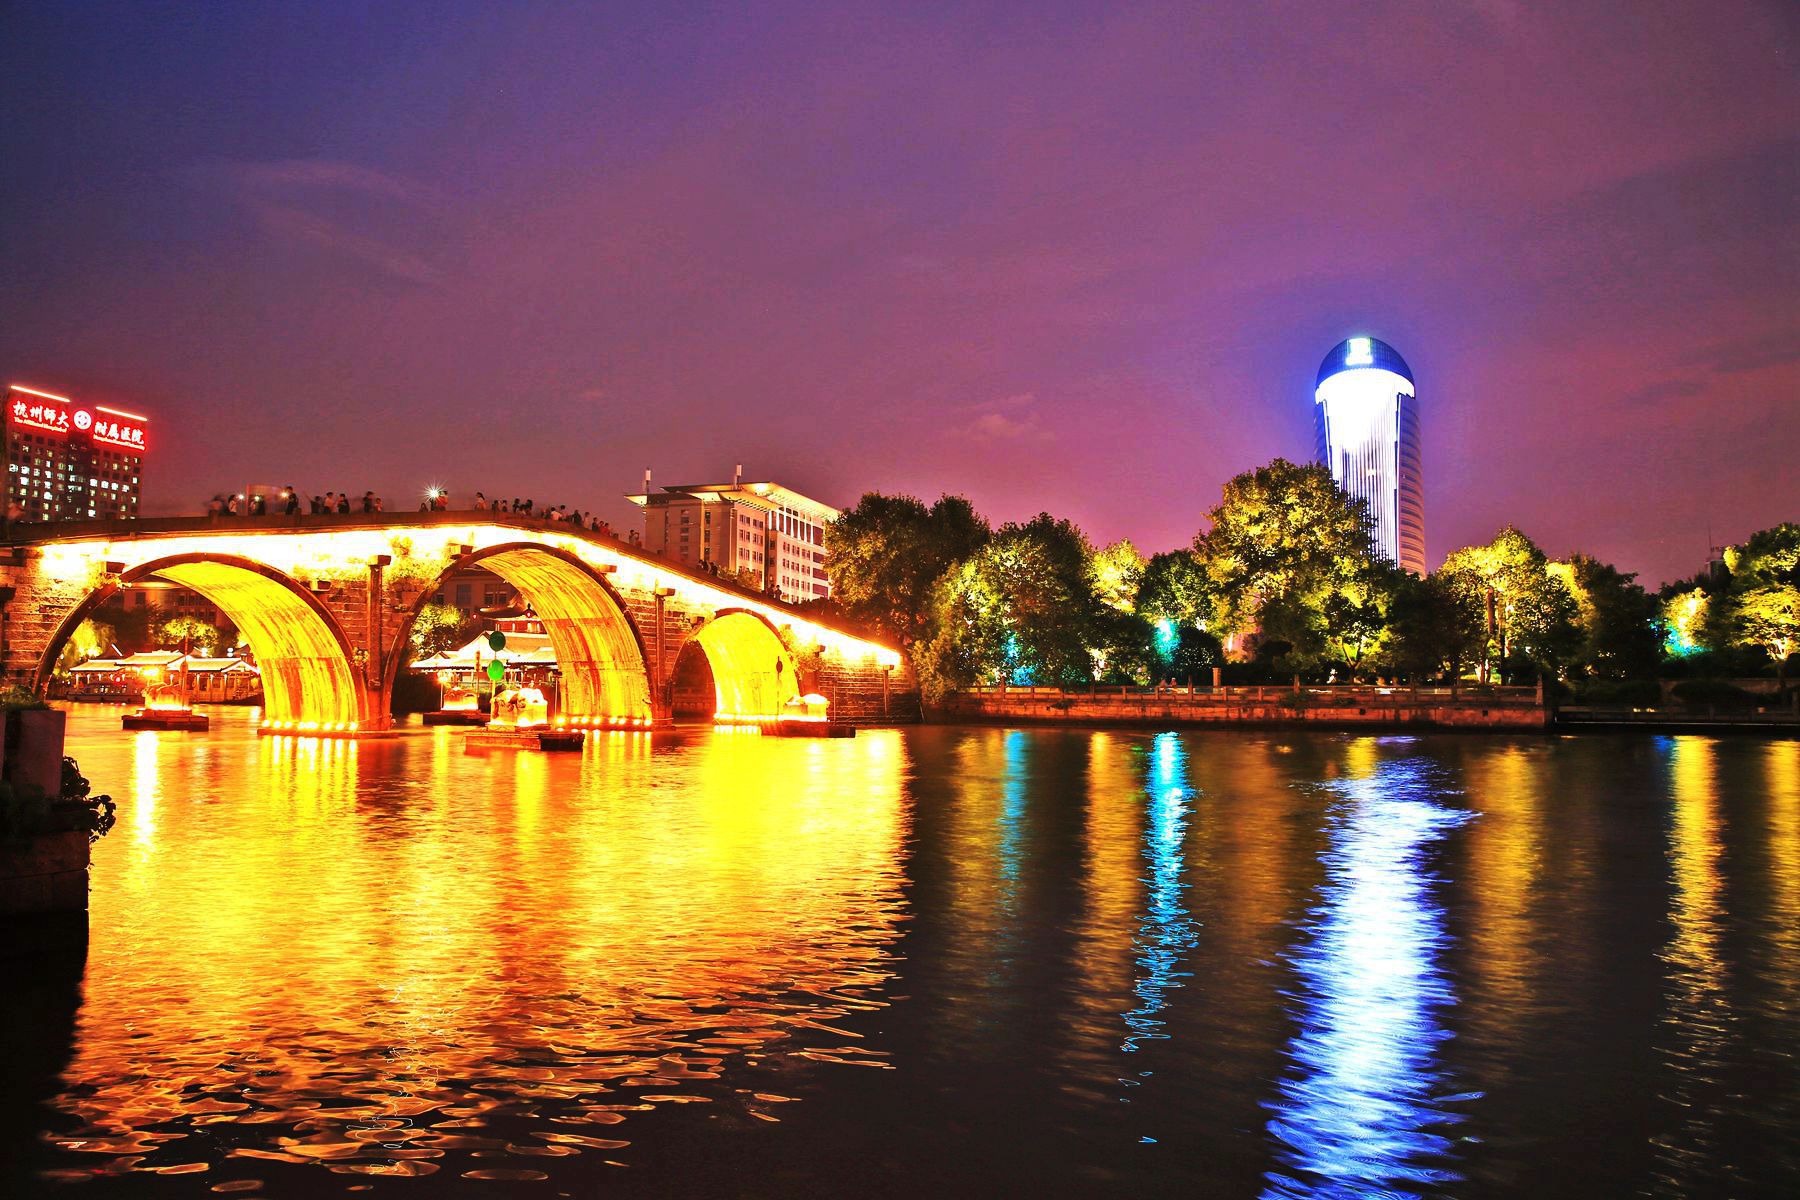 石拱桥图片夜景图片